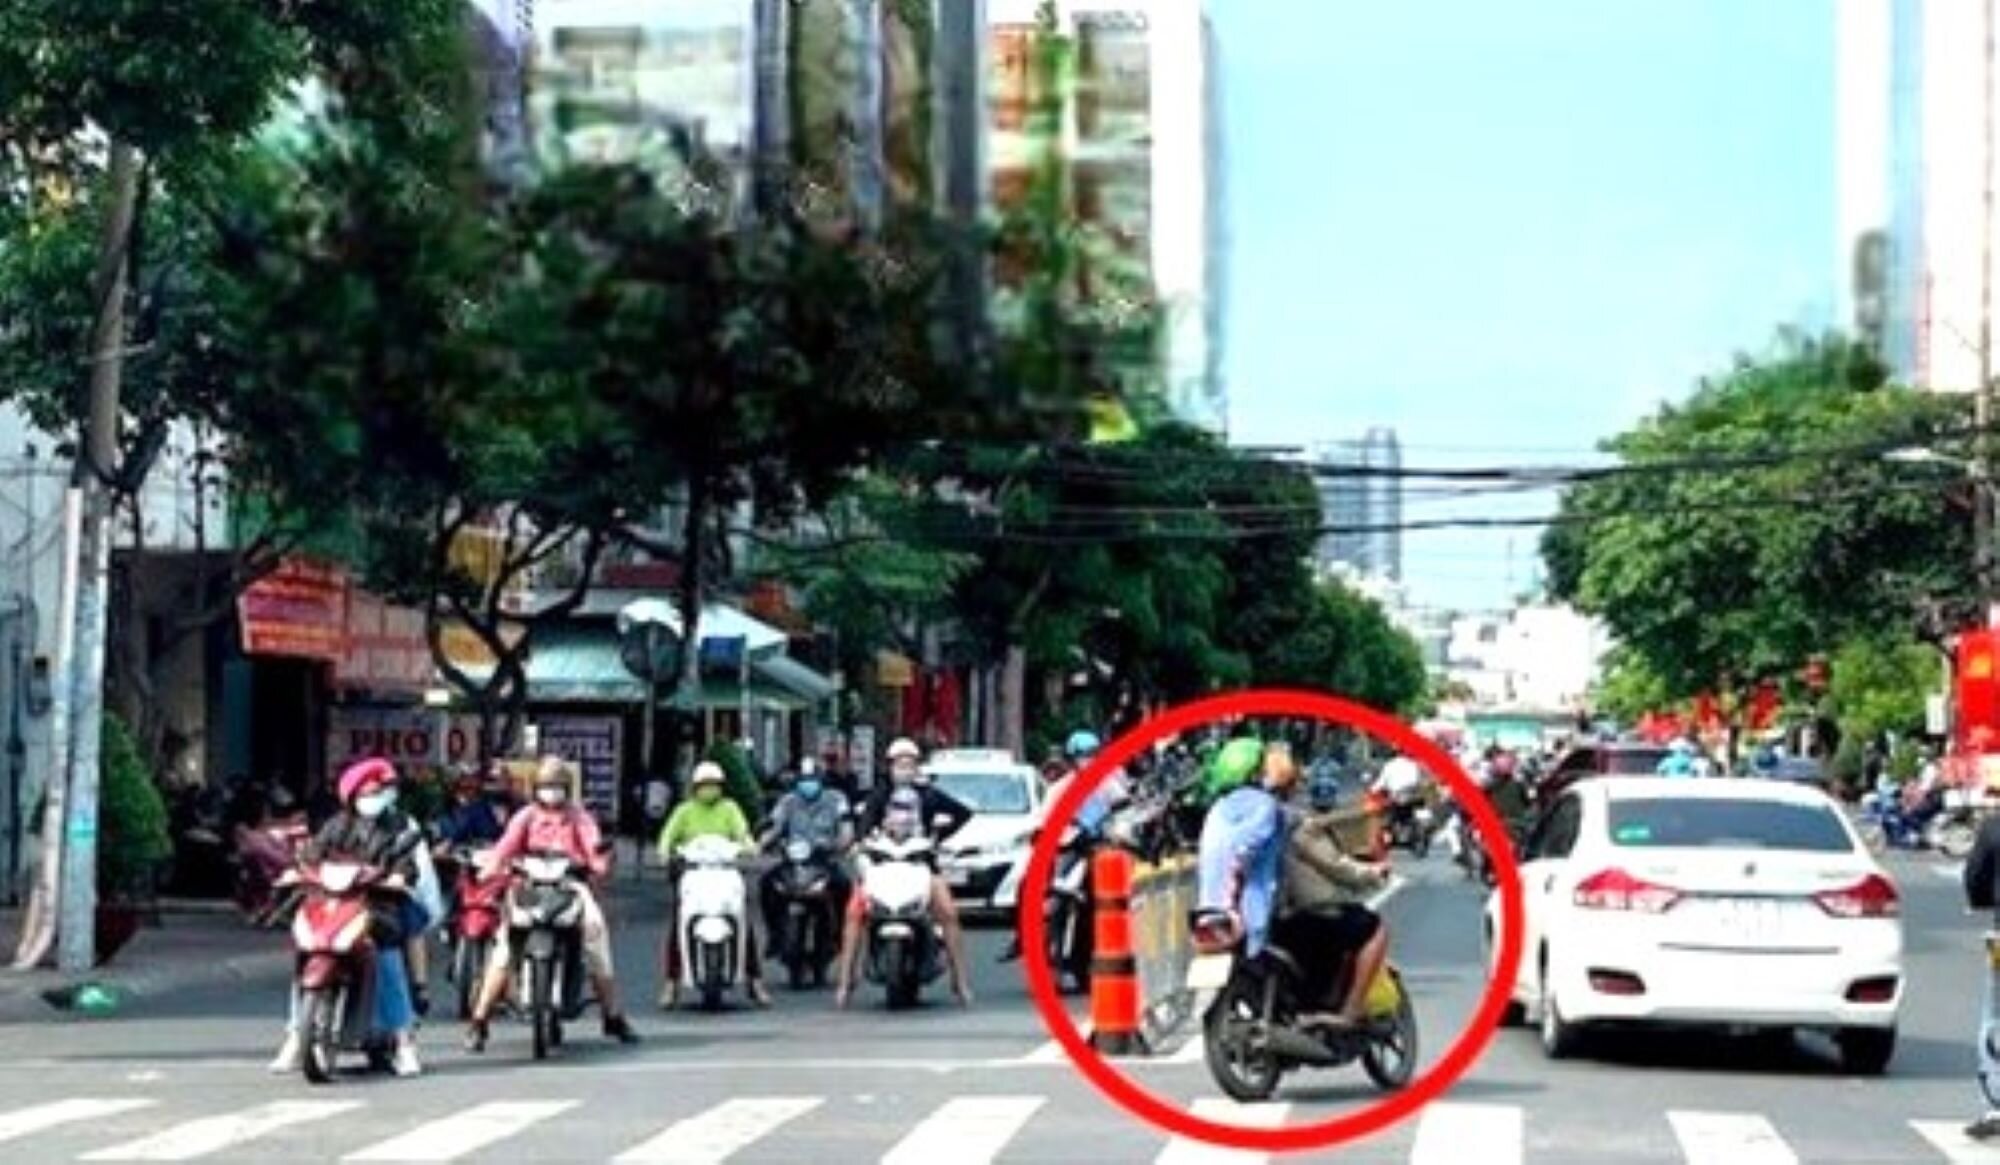 Quay đầu xe máy tại phần đường dành cho người đi bộ là sai quy định. (Ảnh: Thuvienphapluat)